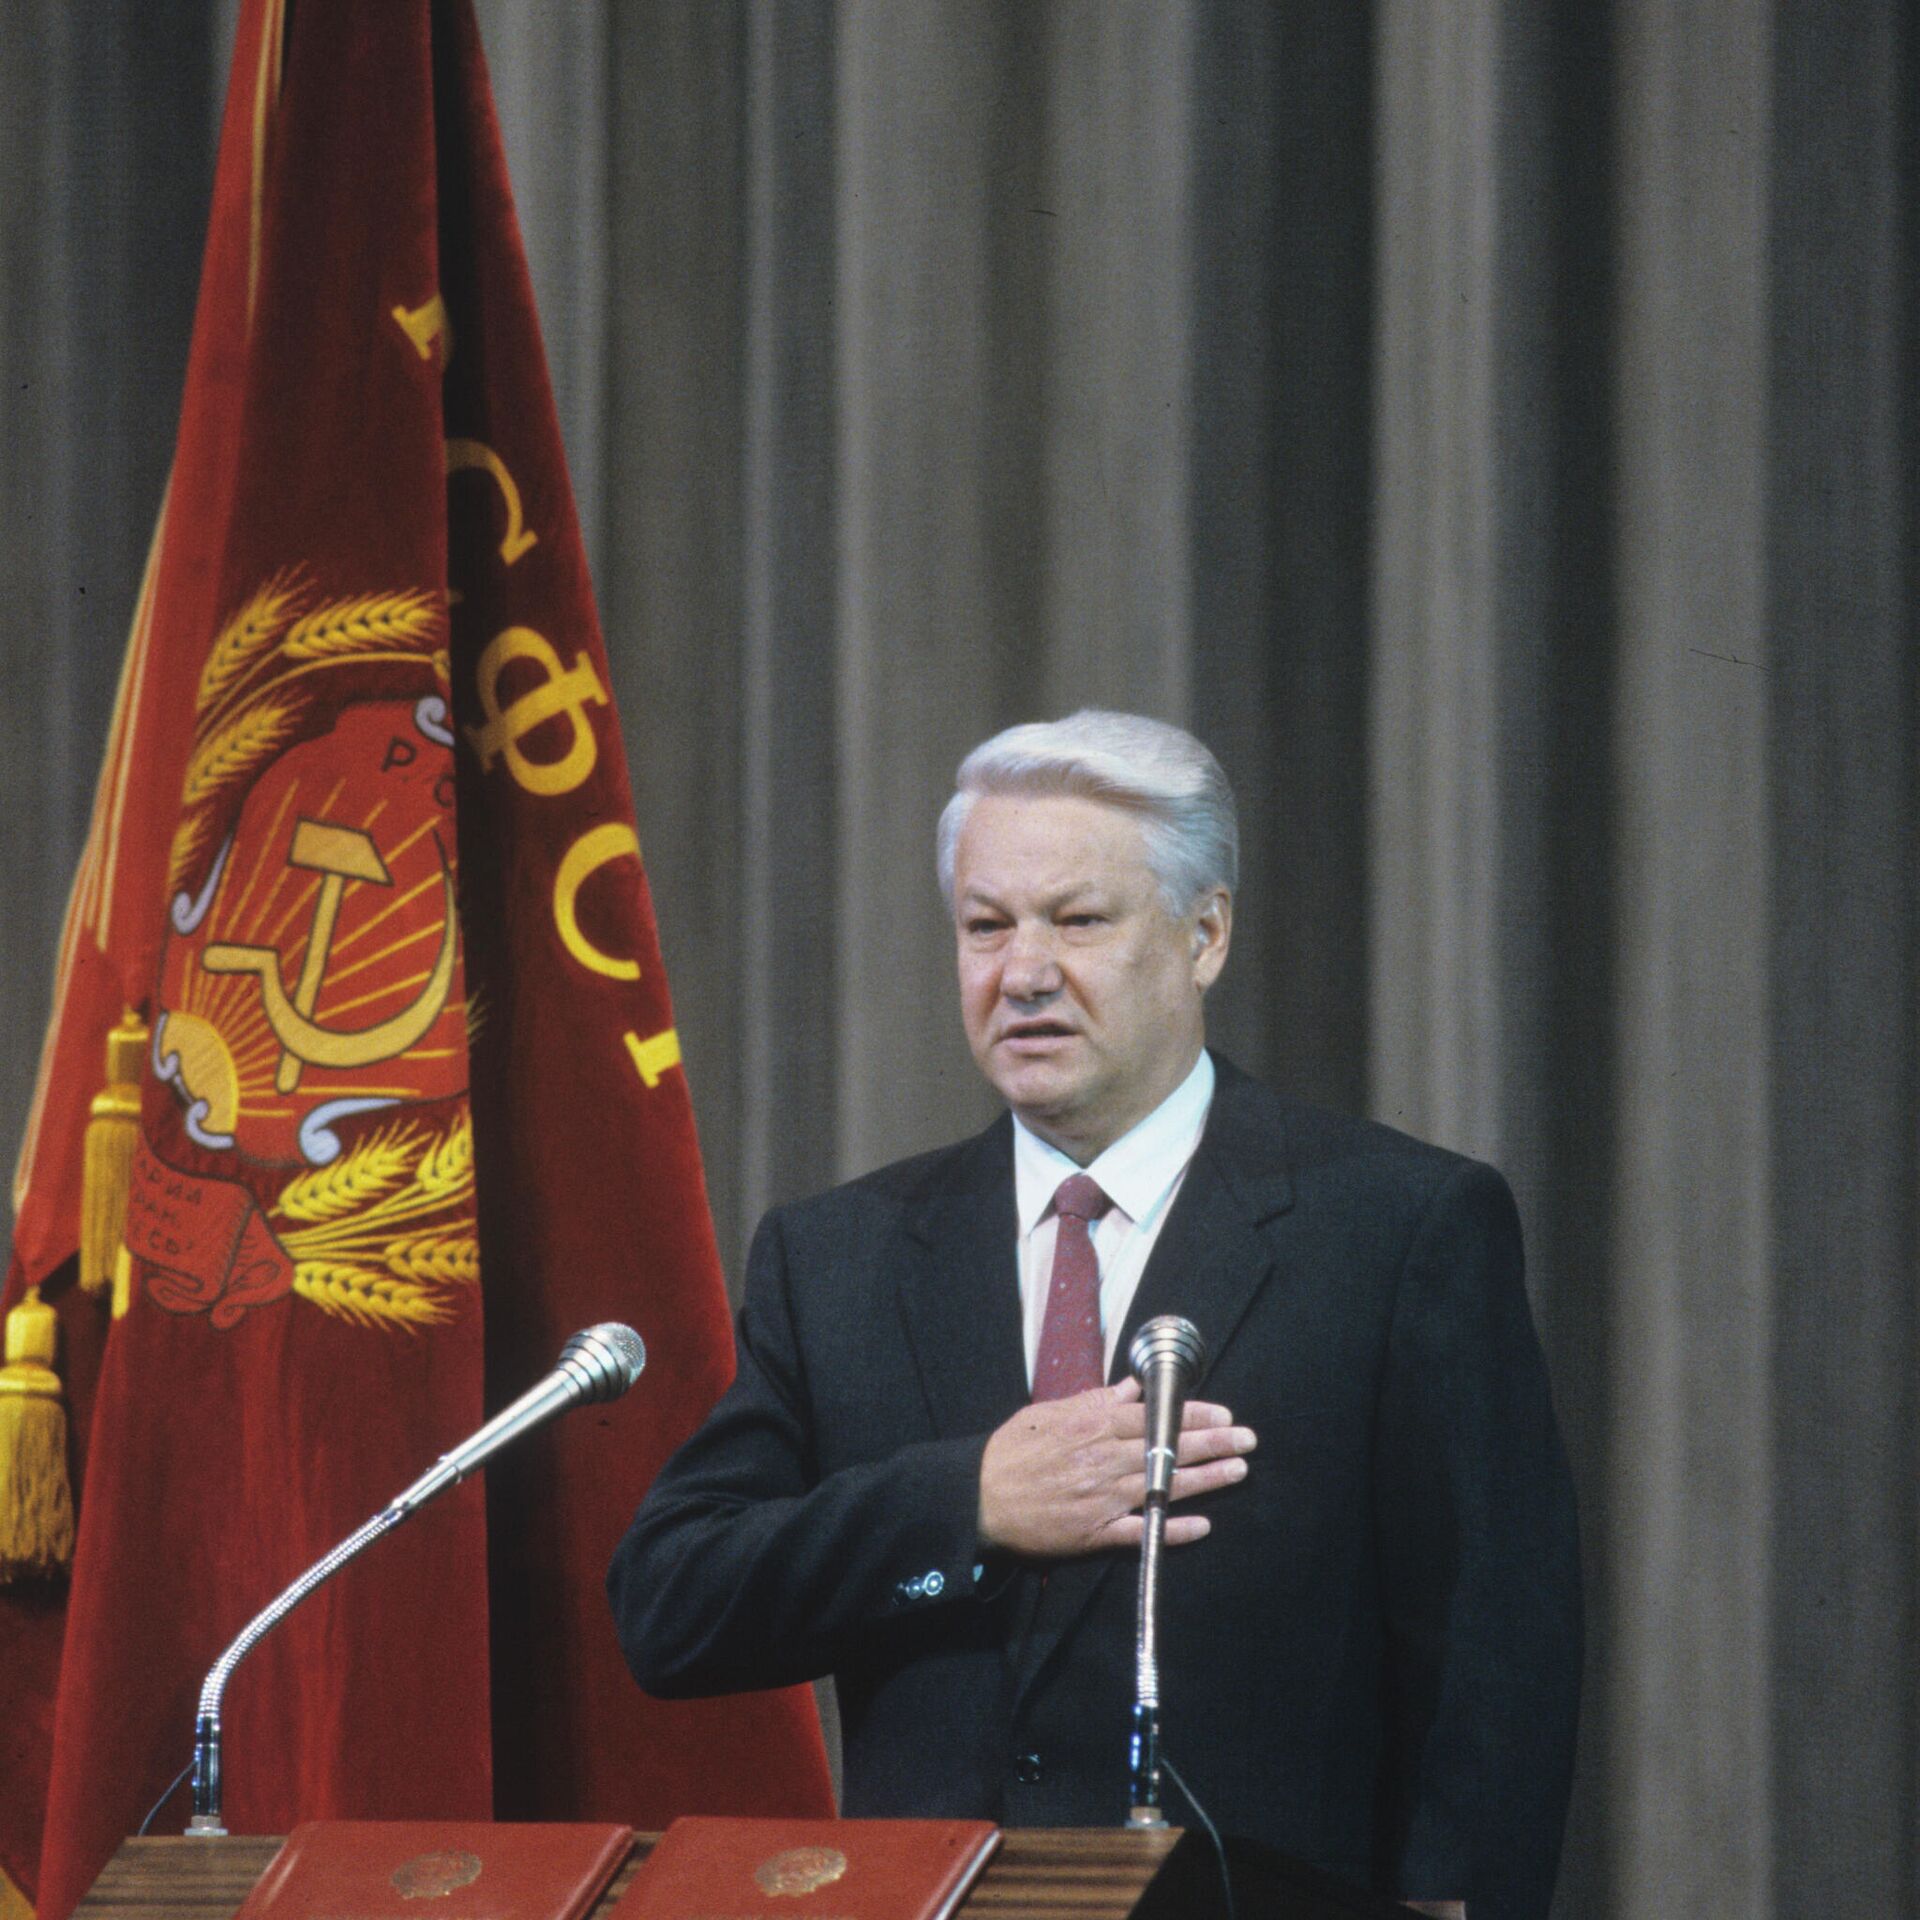 Выборы президента 1991 года в россии